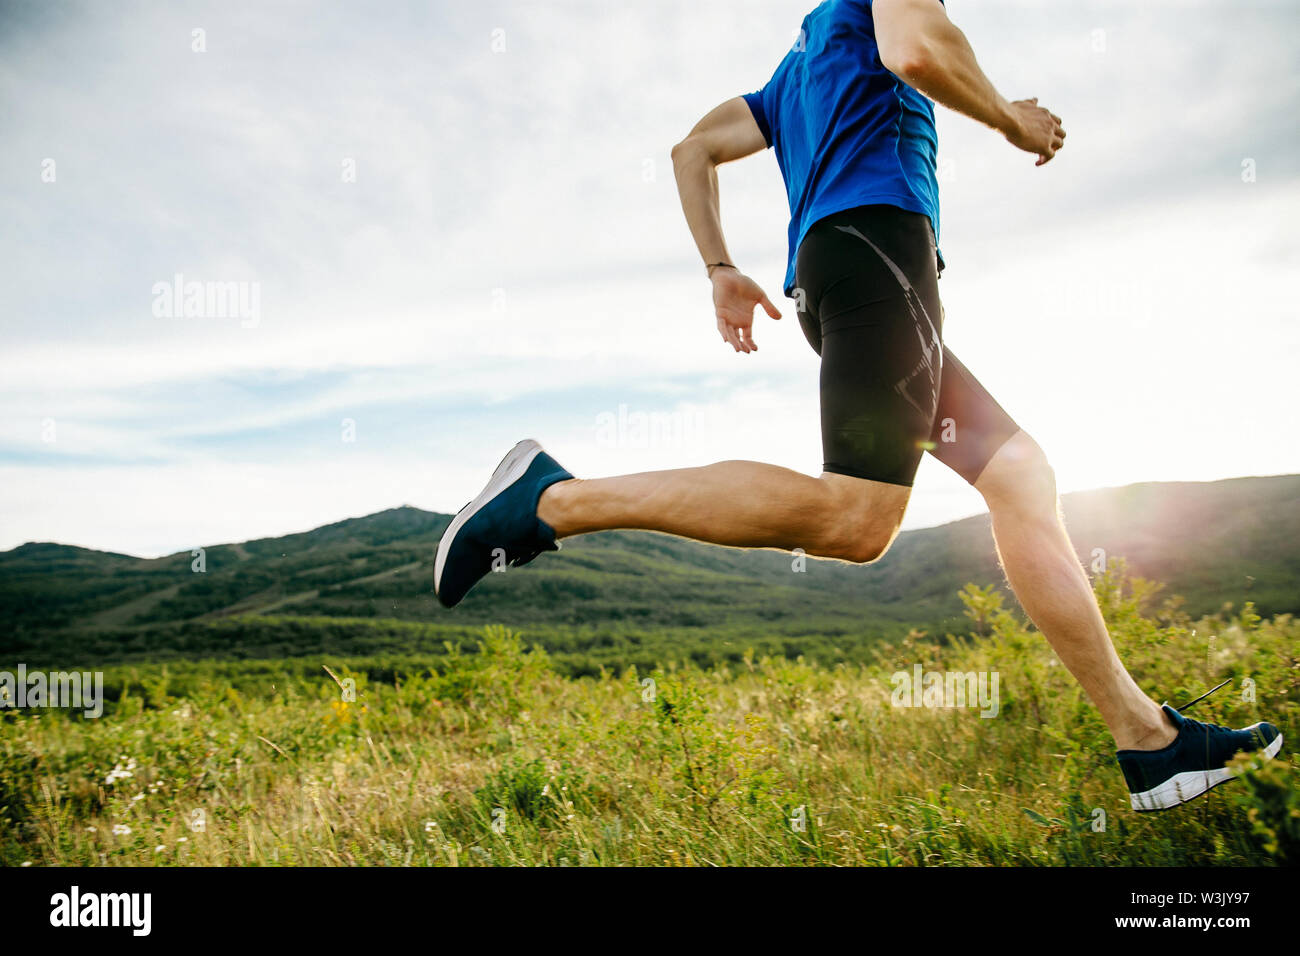 Atleta runner ejecute en la meseta de la montaña de verano en Sunset Foto de stock